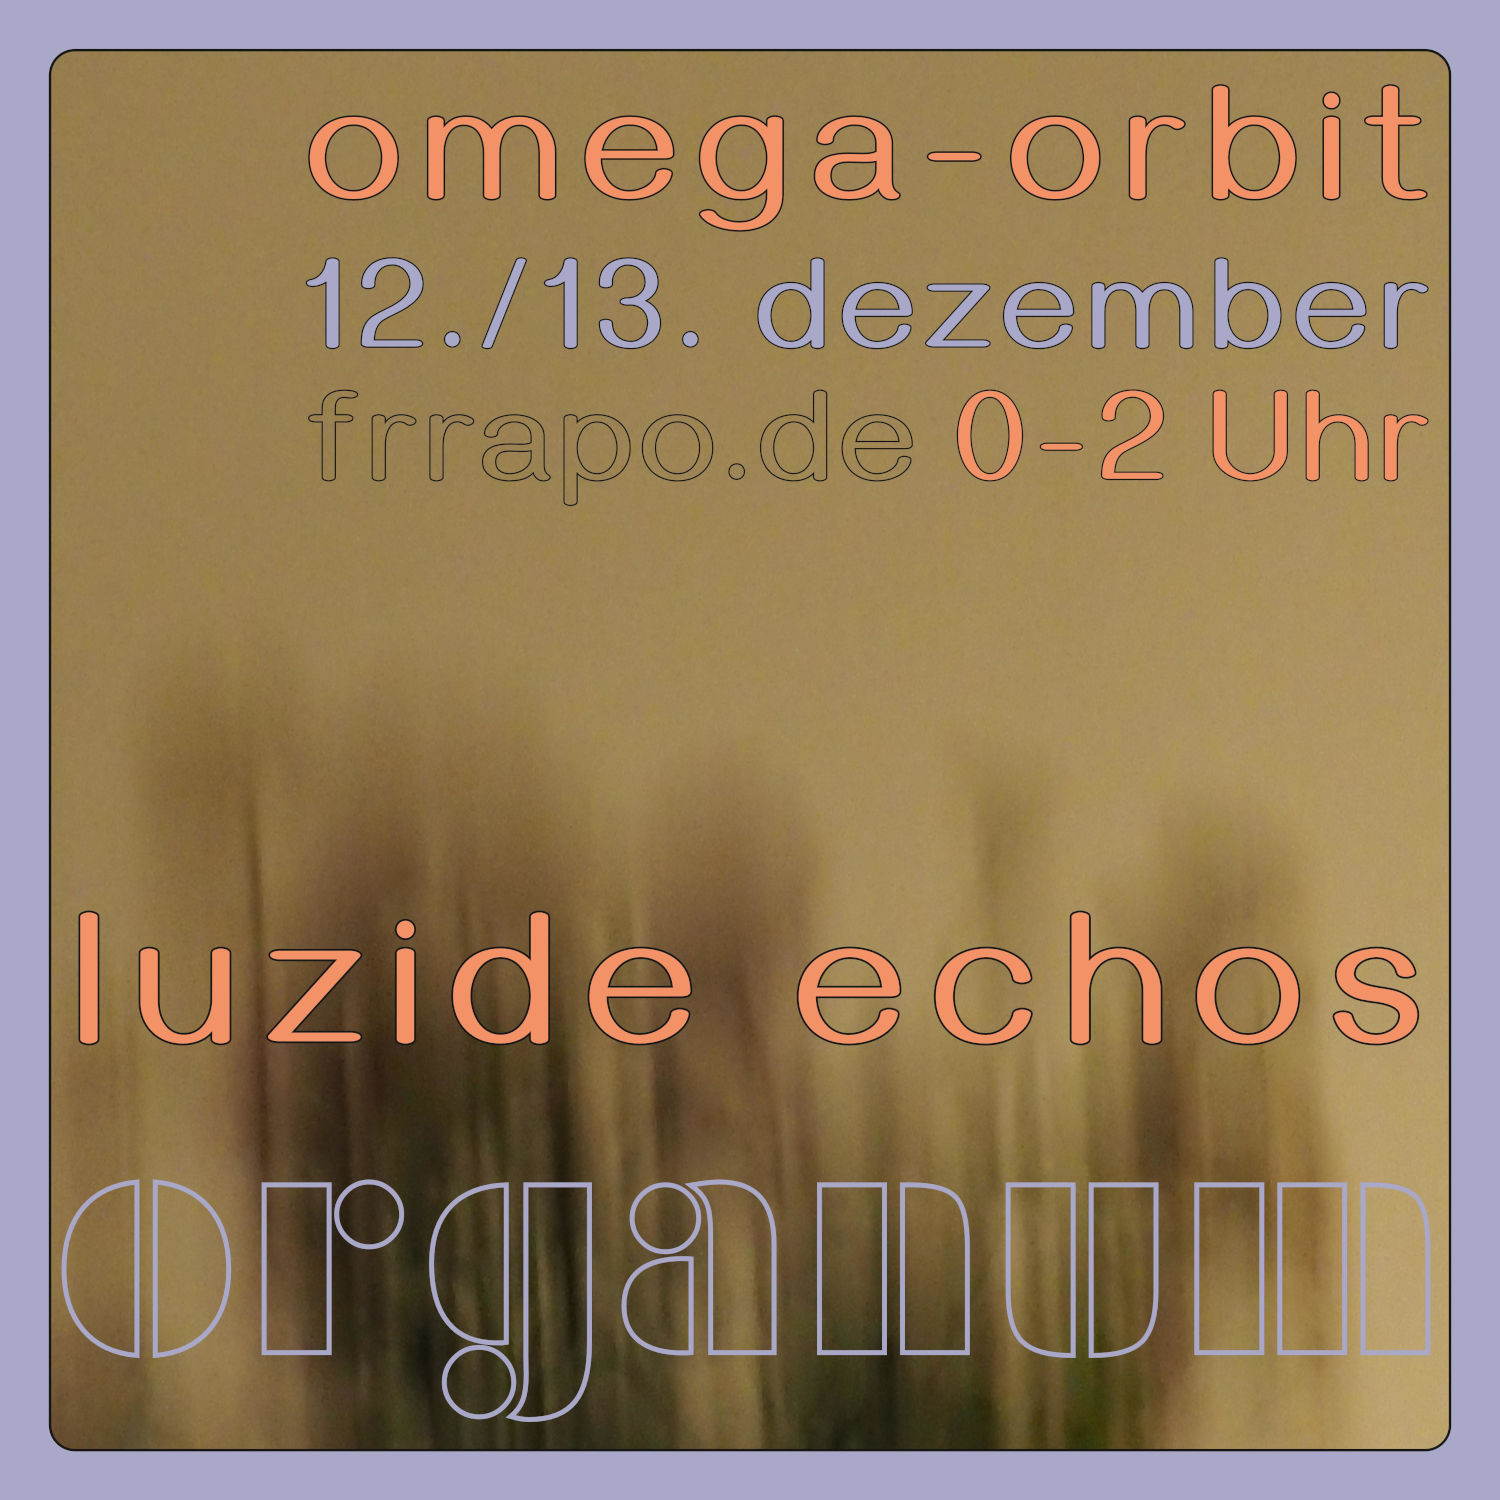 Omega Orbit am kommenden Montag/Dienstag